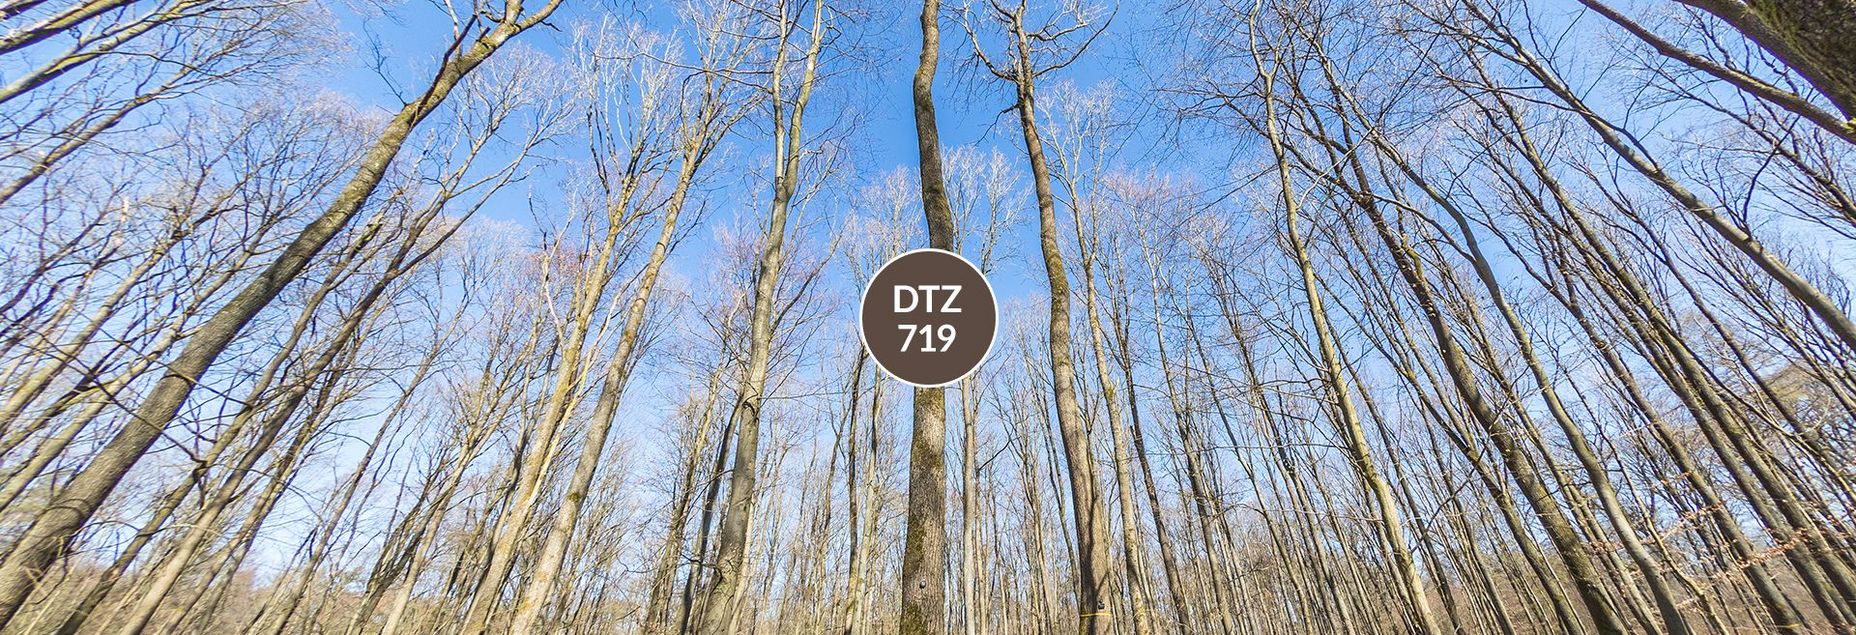 DTZ 719 - Baum